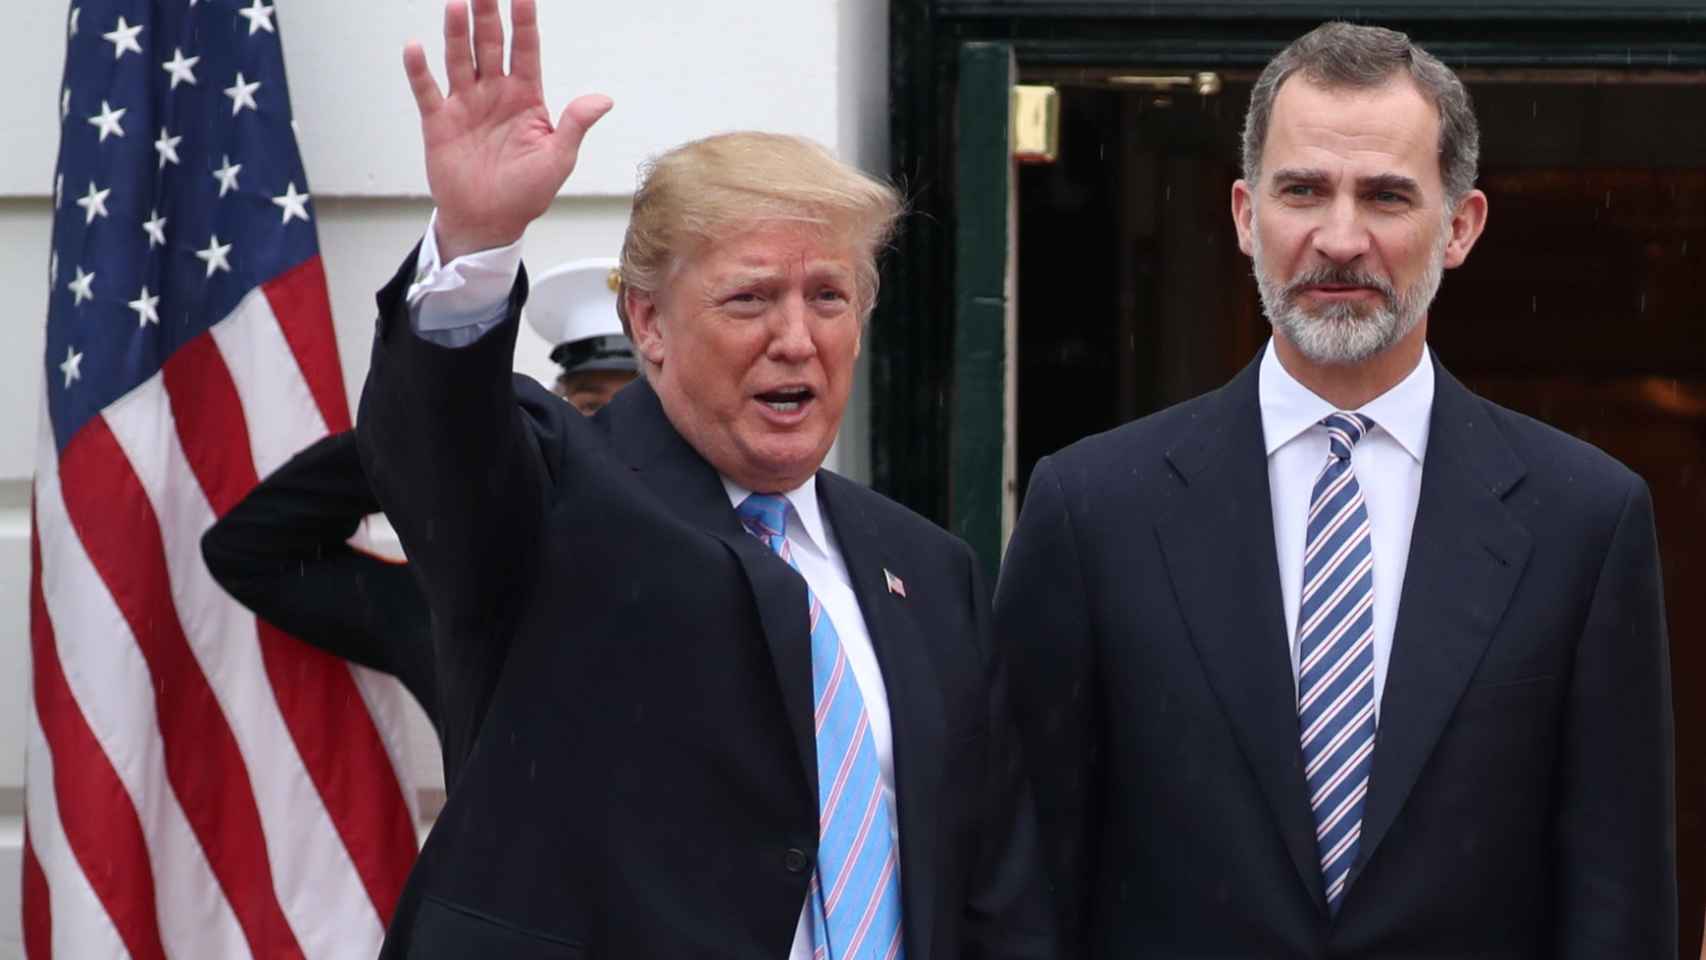 Felipe Vi y Donald Trump en su saludo a las puertas de la Casa Blanca.